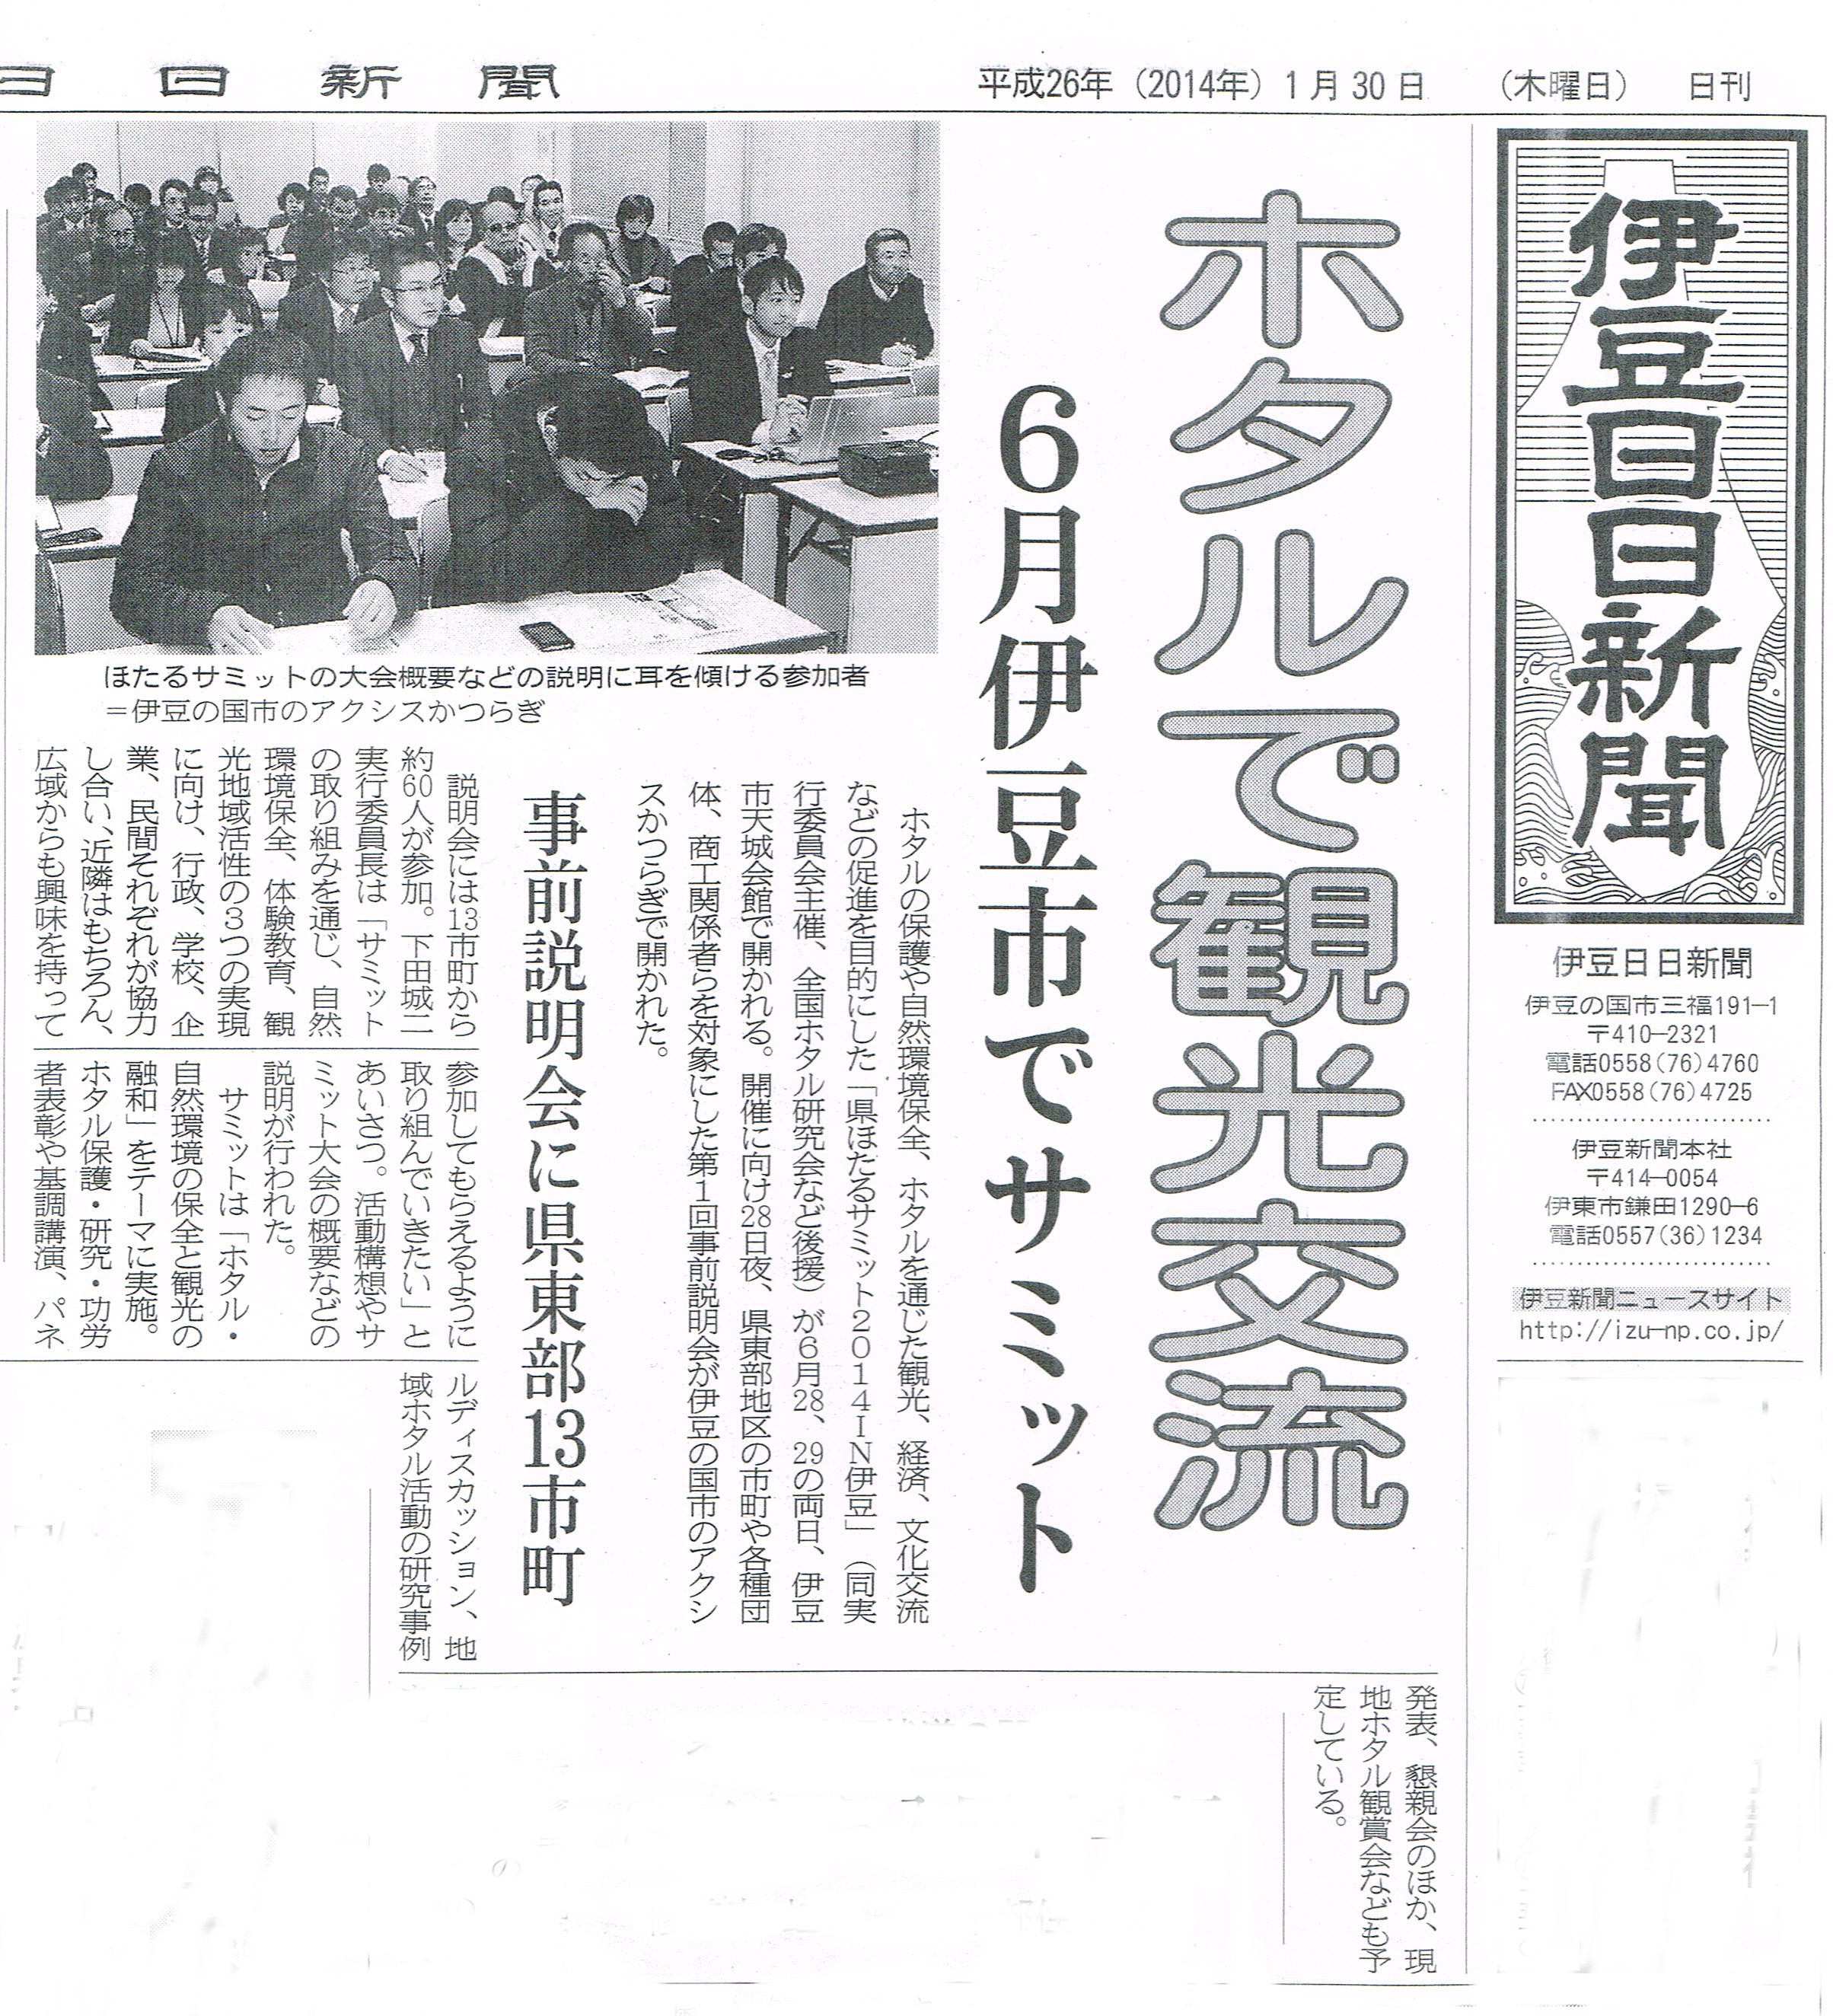 静岡県ほたるサミットの第一回実行委員会